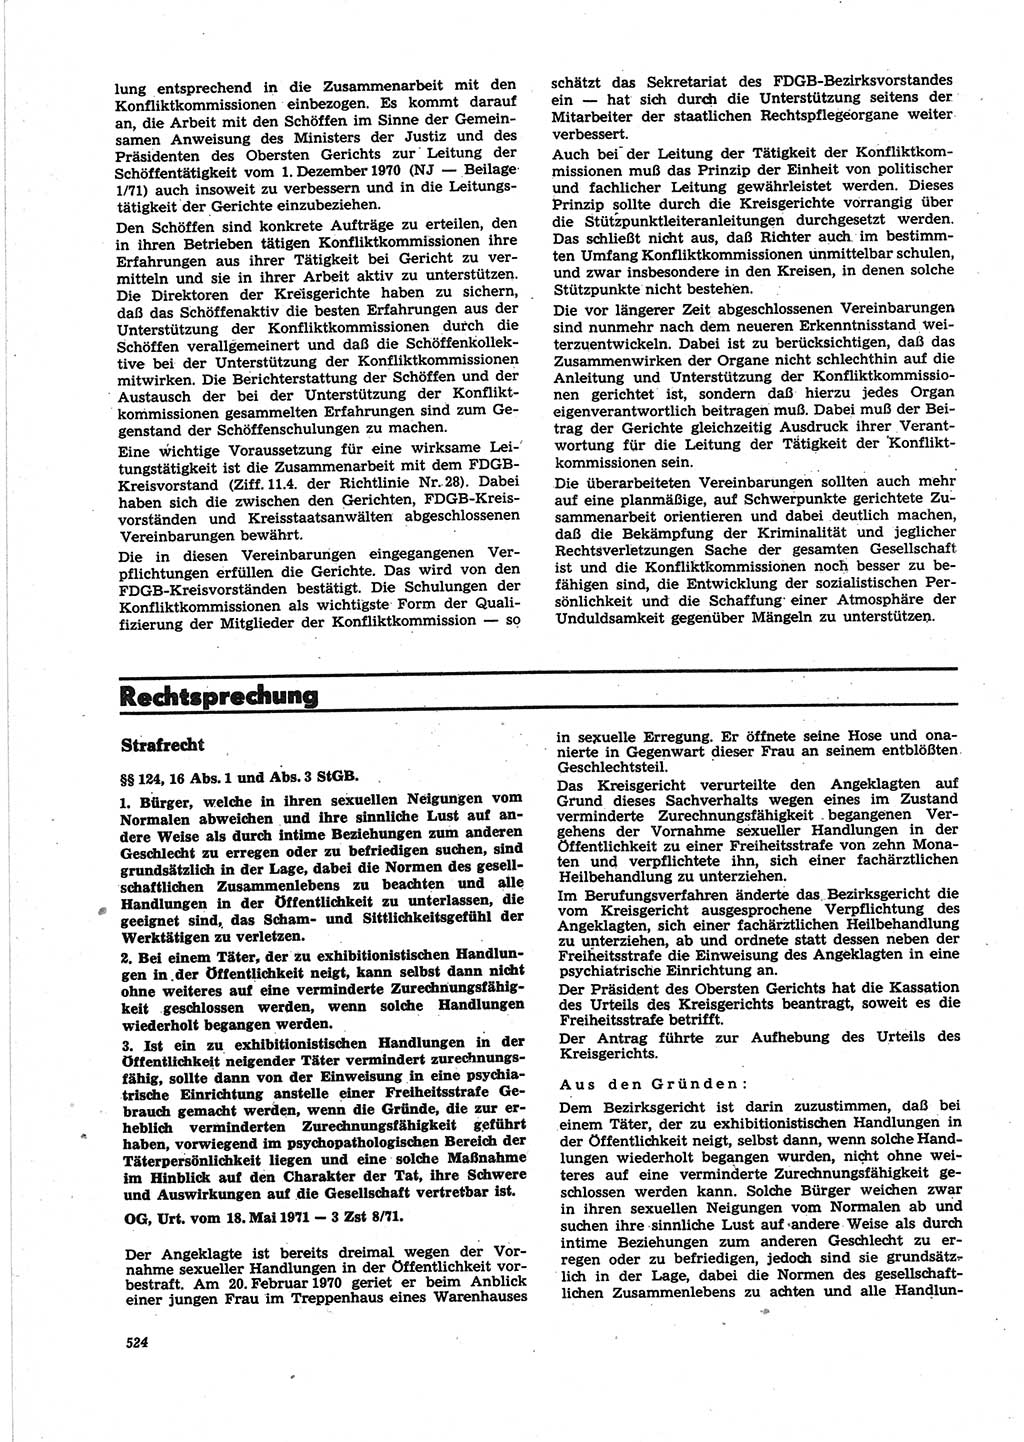 Neue Justiz (NJ), Zeitschrift für Recht und Rechtswissenschaft [Deutsche Demokratische Republik (DDR)], 25. Jahrgang 1971, Seite 524 (NJ DDR 1971, S. 524)